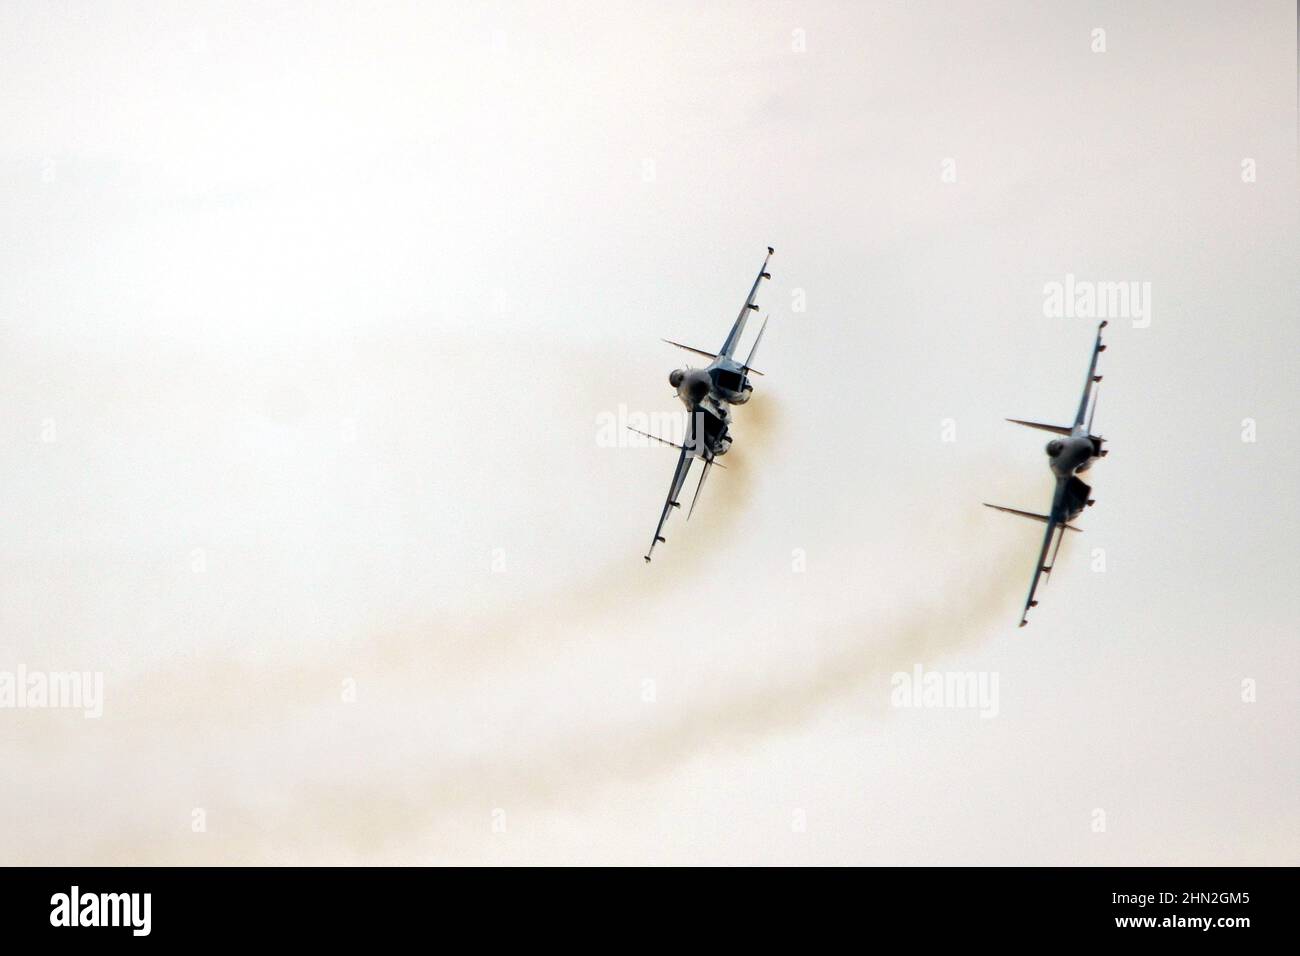 Ukrainische Luftstreitkräfte, Suchoi Su-27 Flanker, Militärflugzeuge Vasylkiw Air Base, Ukraine, Geist von Kiew Stockfoto